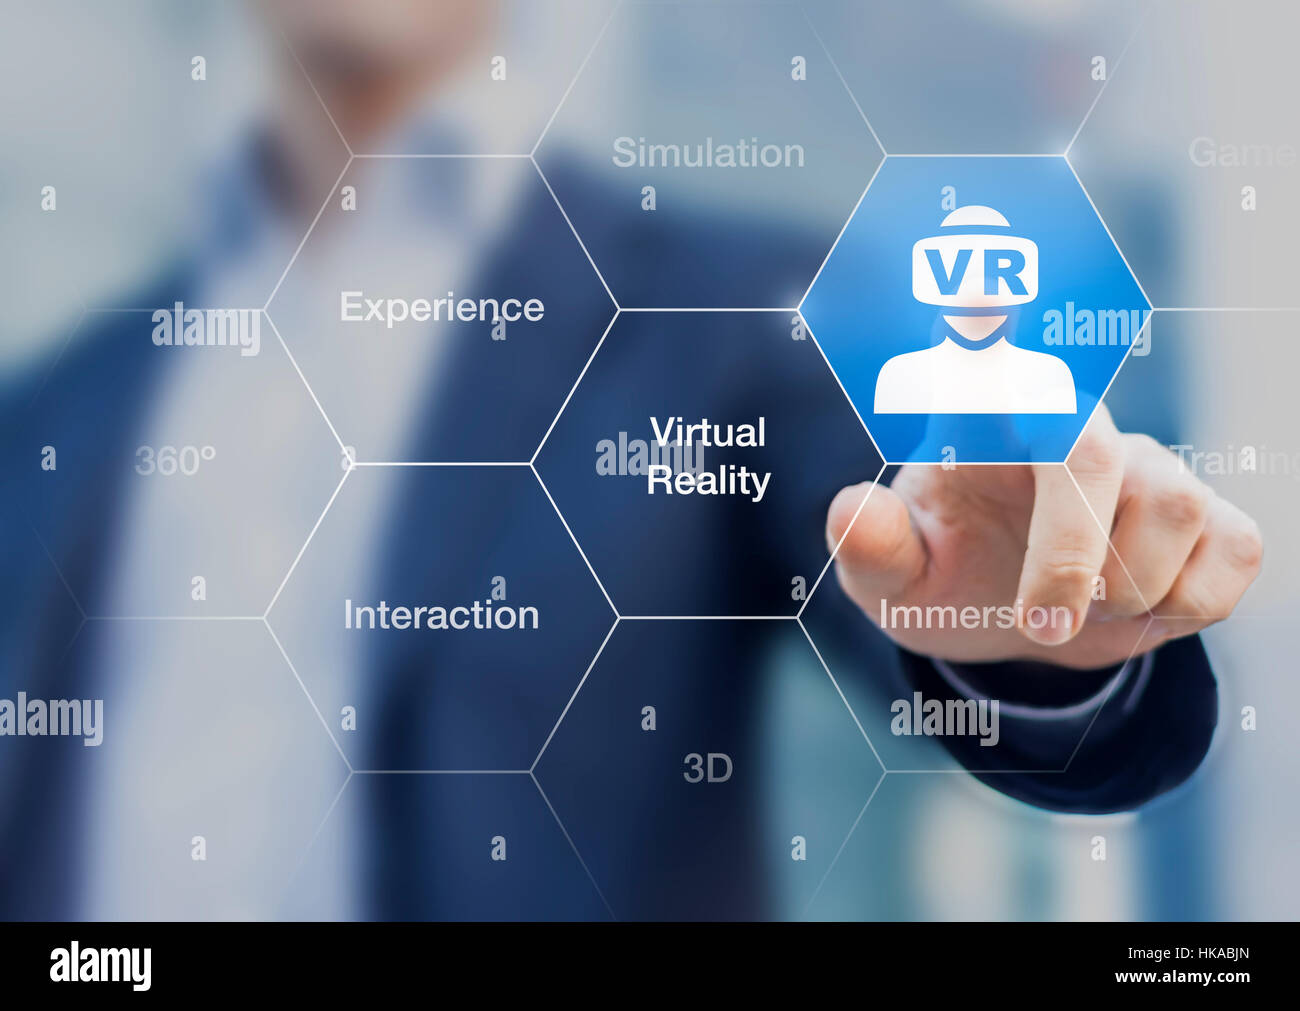 Le concept de réalité virtuelle avec l'icône du casque VR sur une interface numérique et d'un businessman de toucher un bouton Banque D'Images